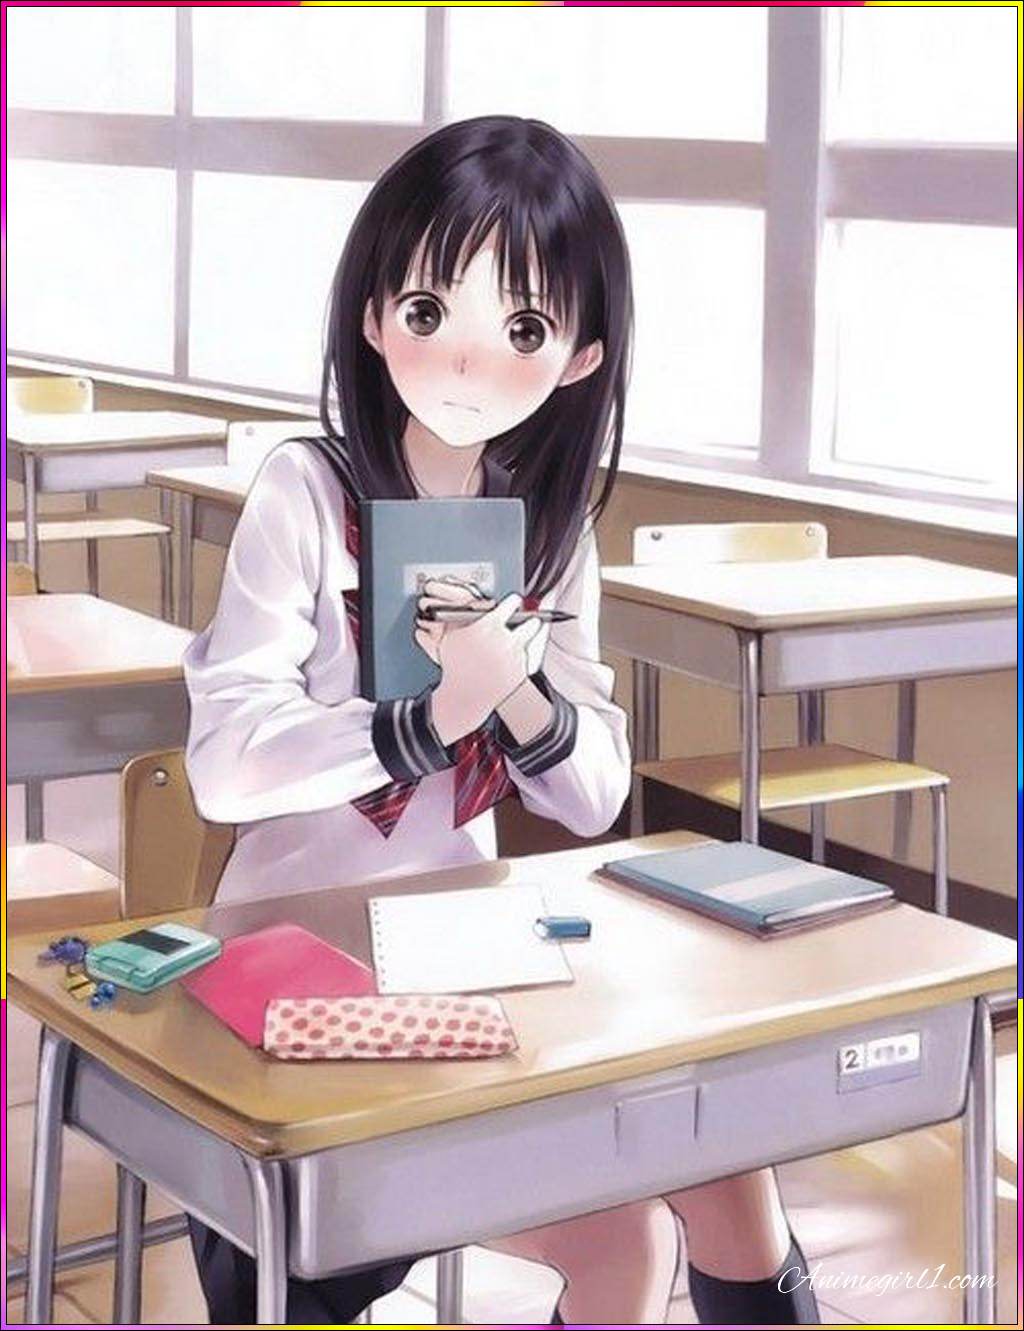 anime girl in class